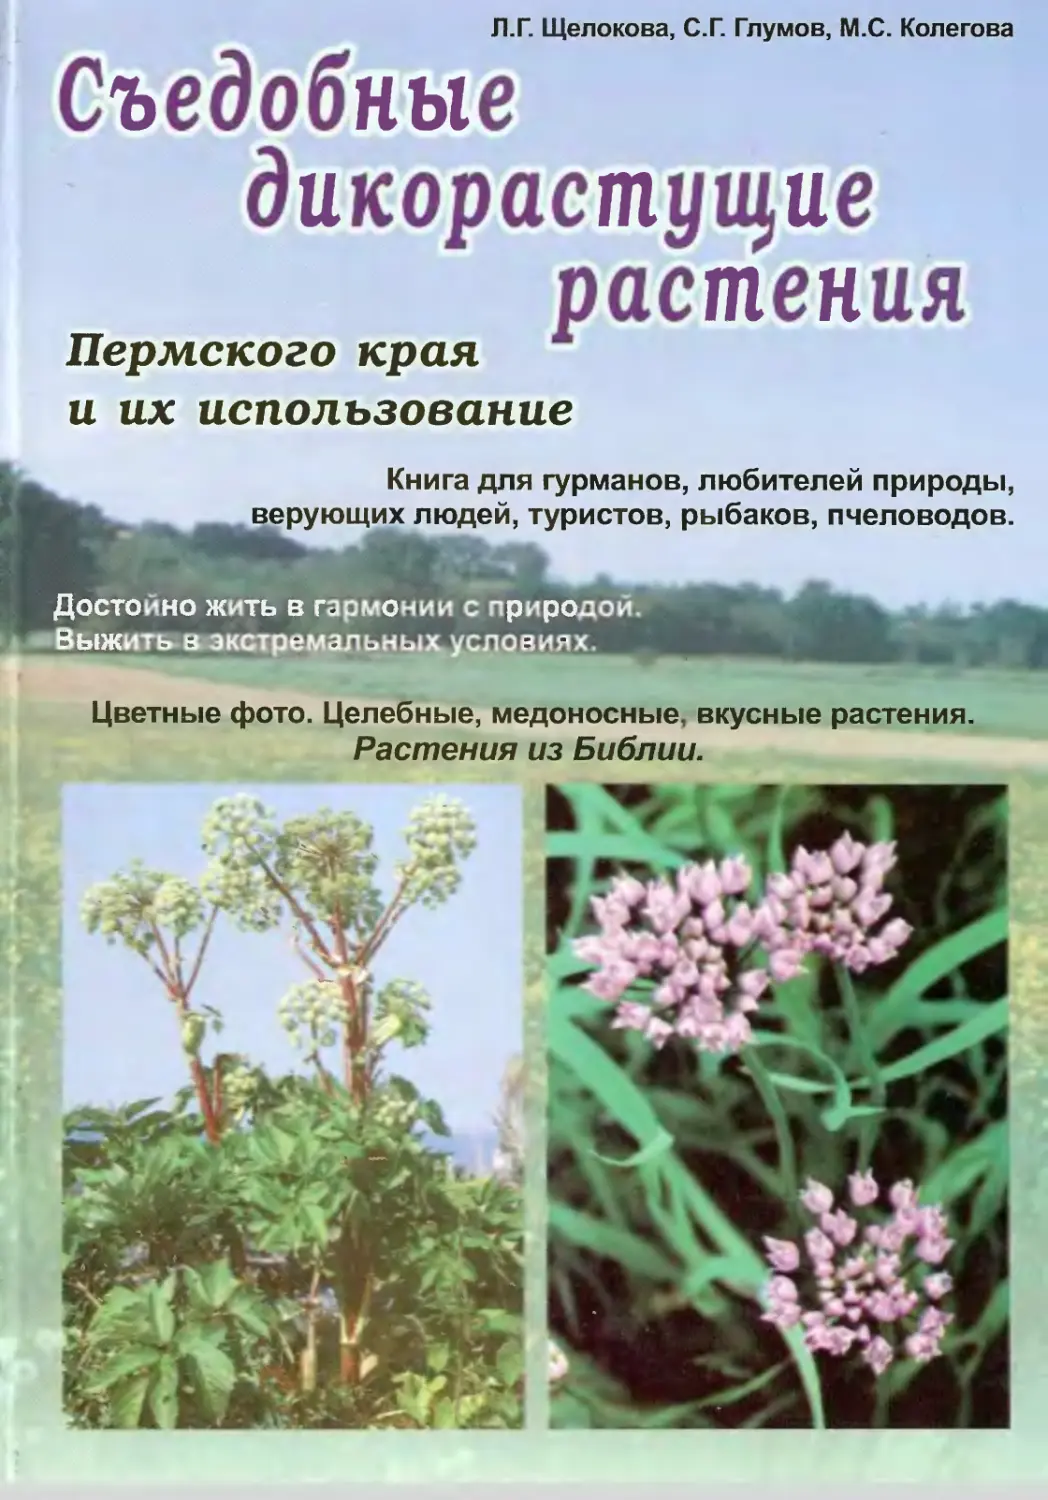 Дикорастущие растения Пермского края